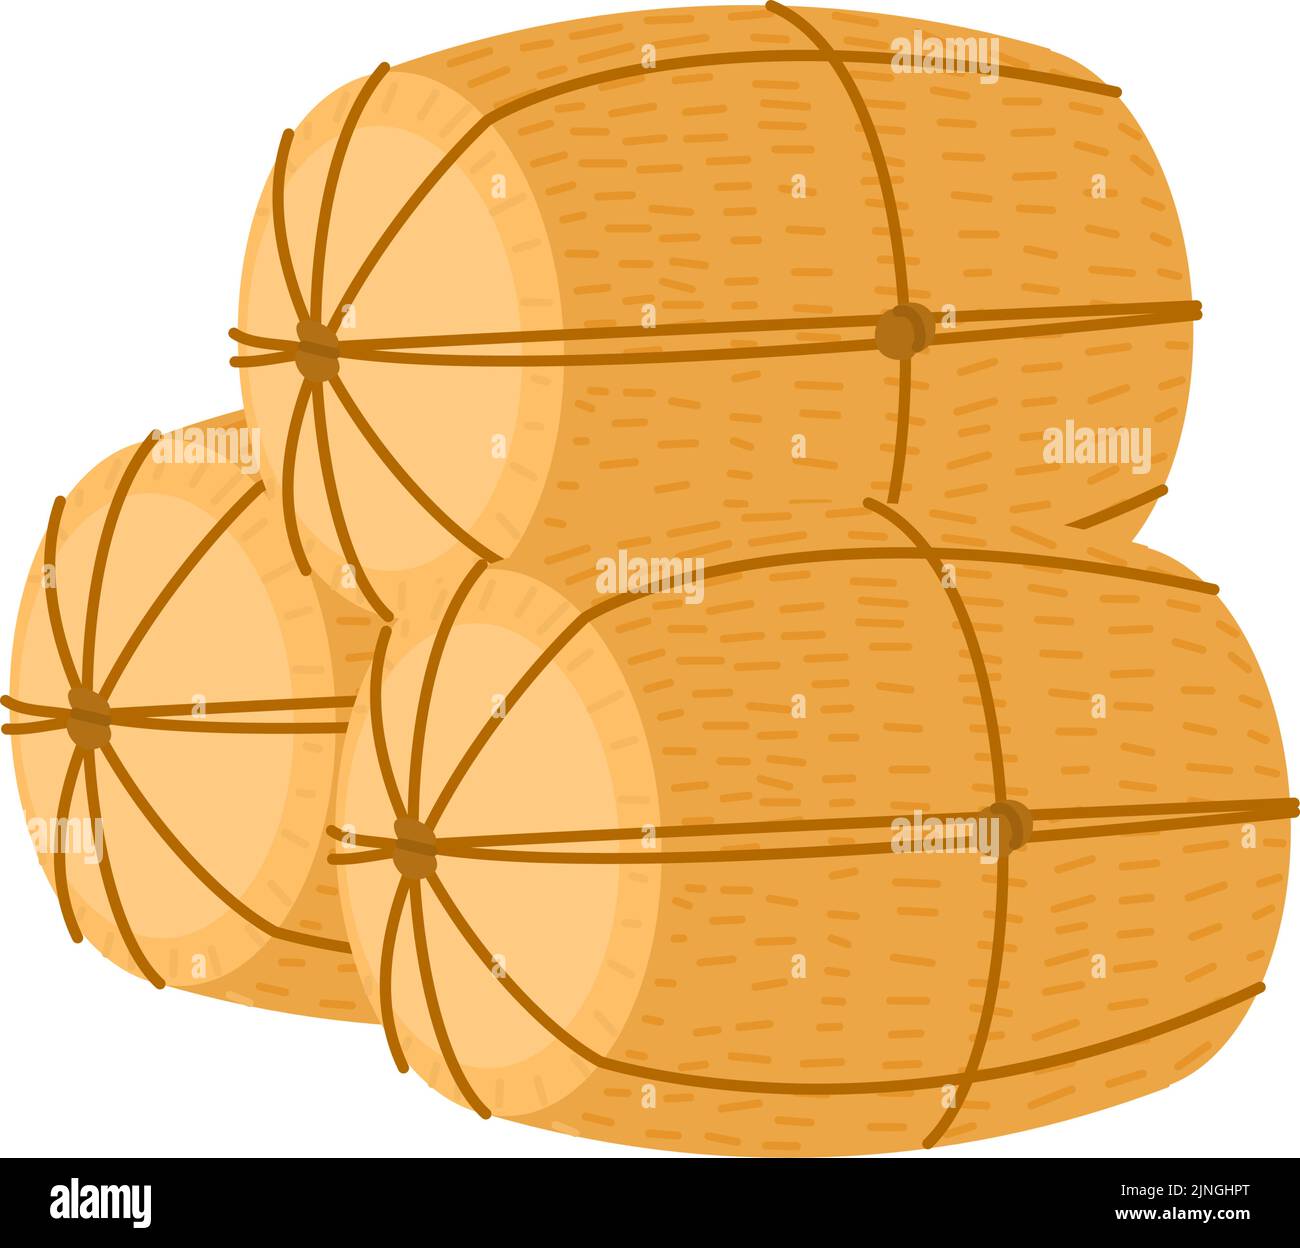 Neujahrsdekoration: Vektor-Illustration von gestapelten Reisballen im japanischen Stil Stock Vektor